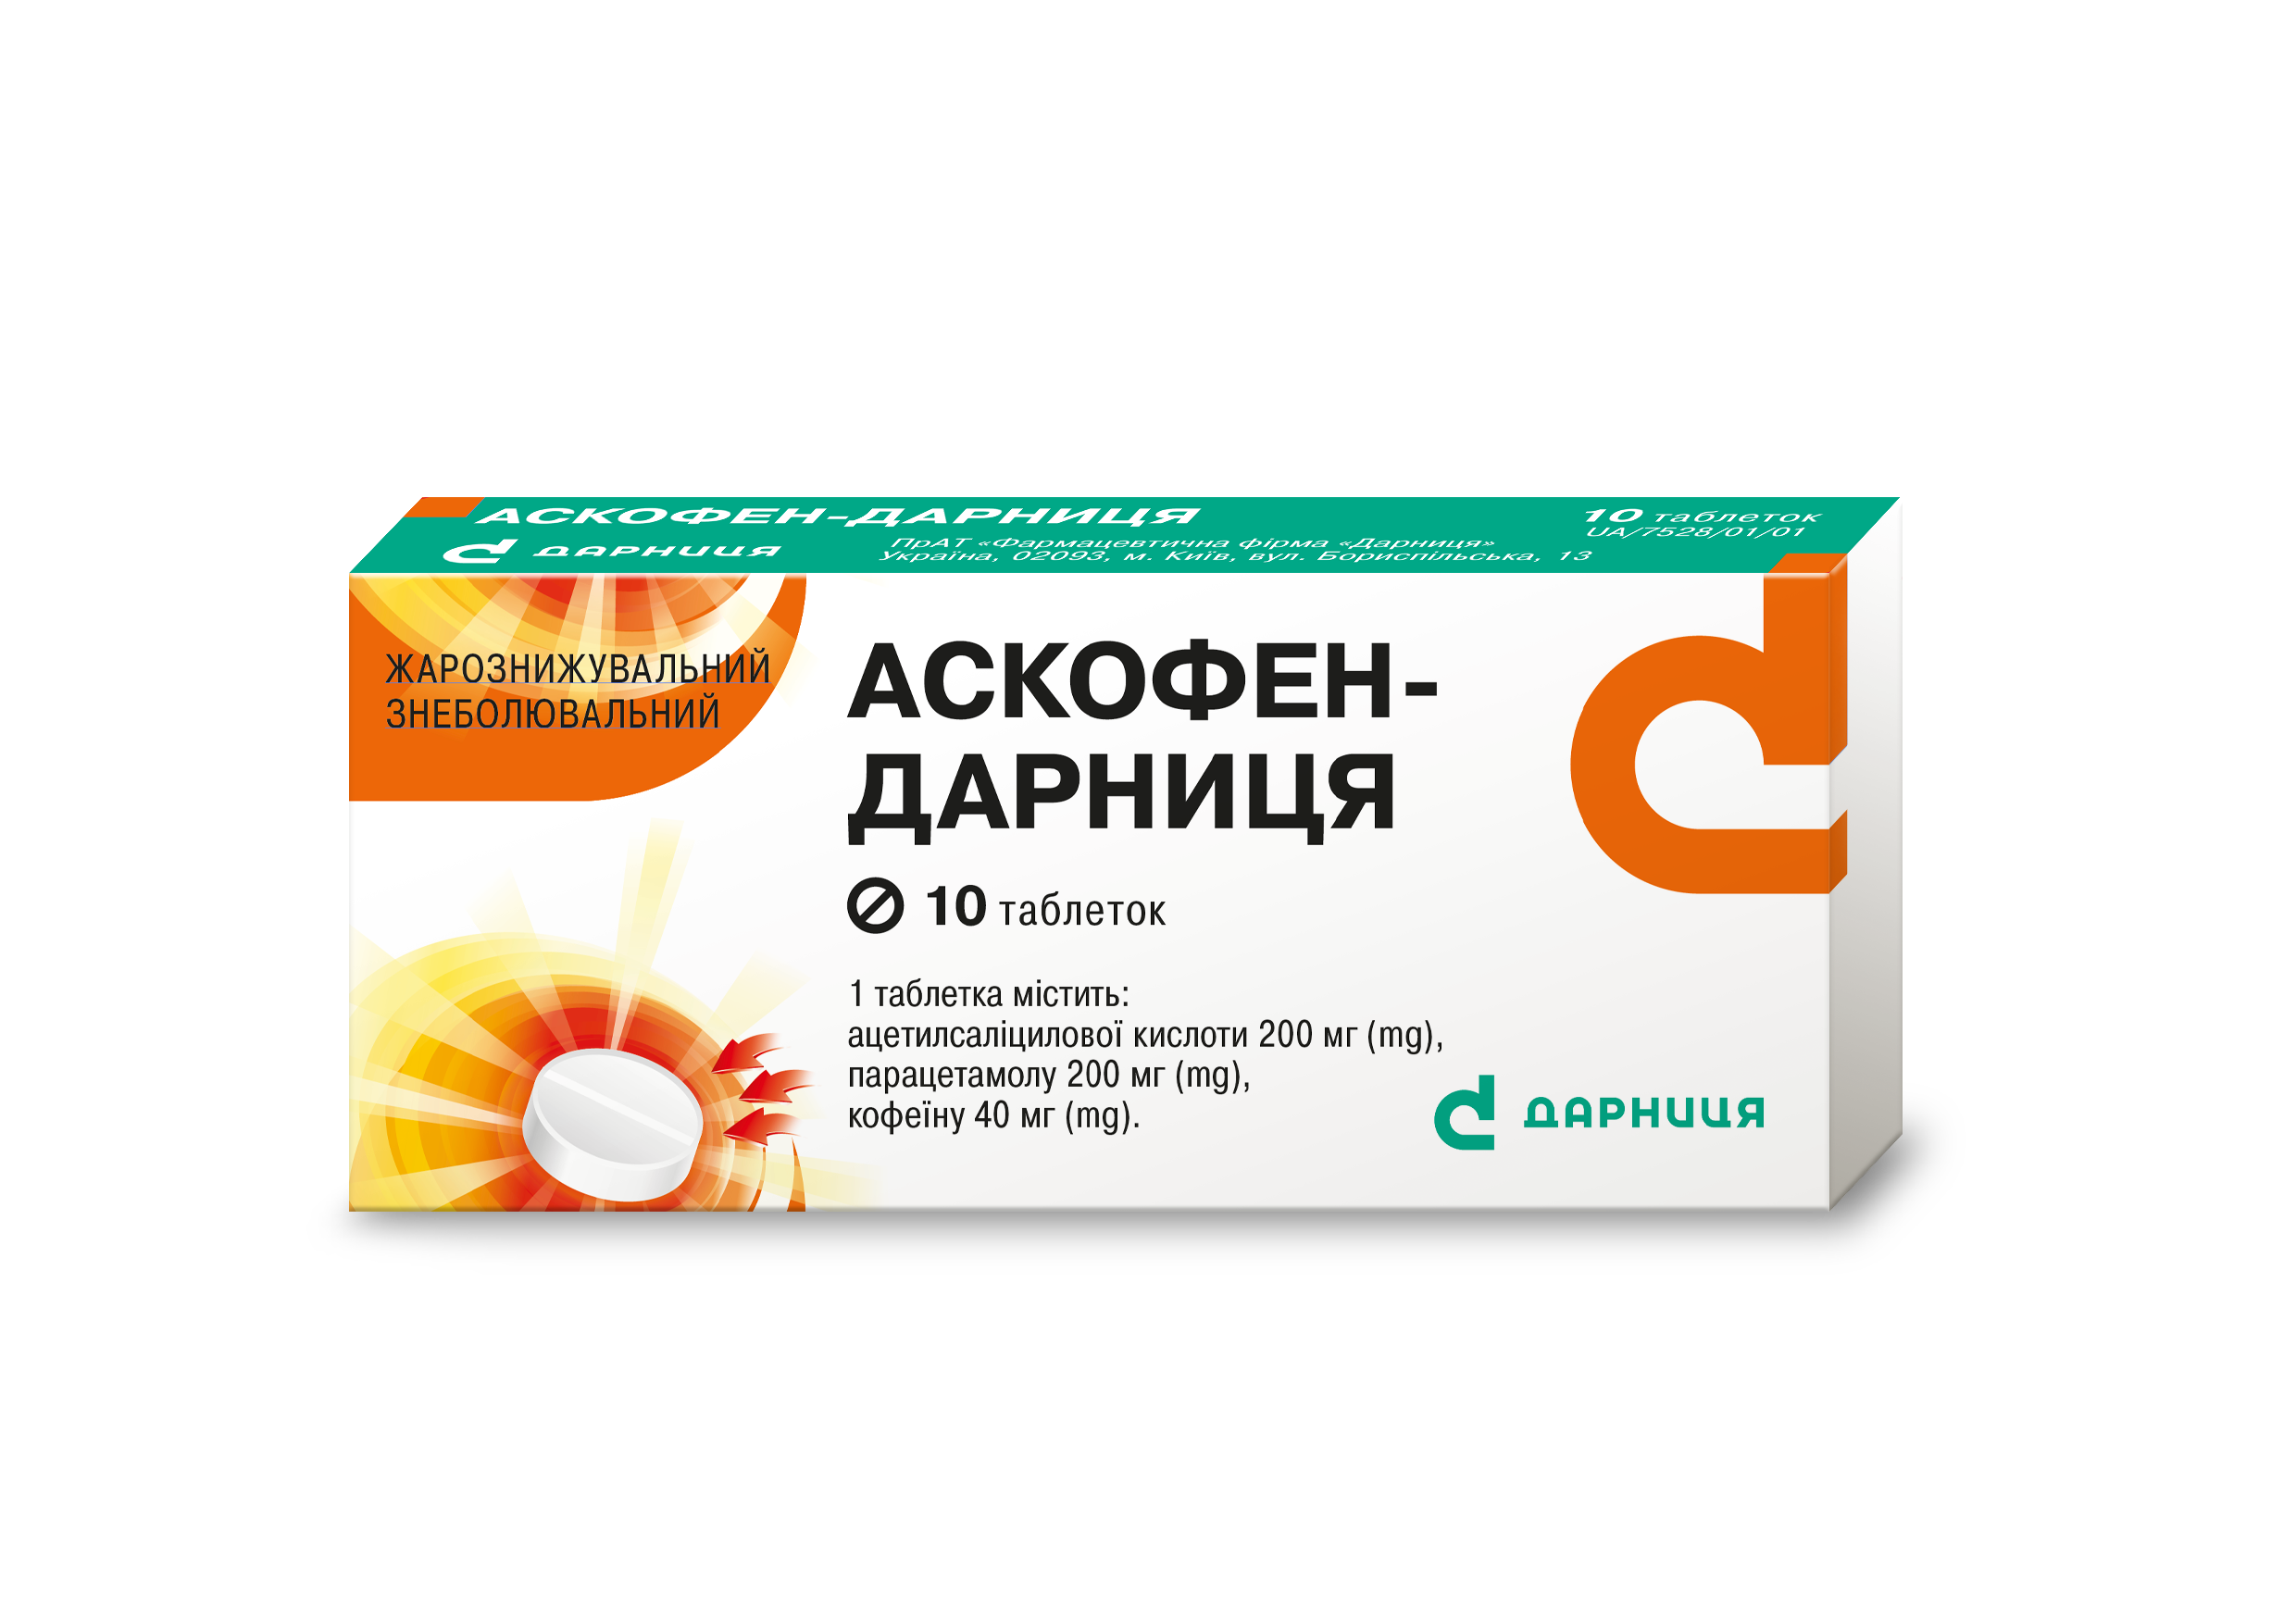 Ascophen-Darnitsa